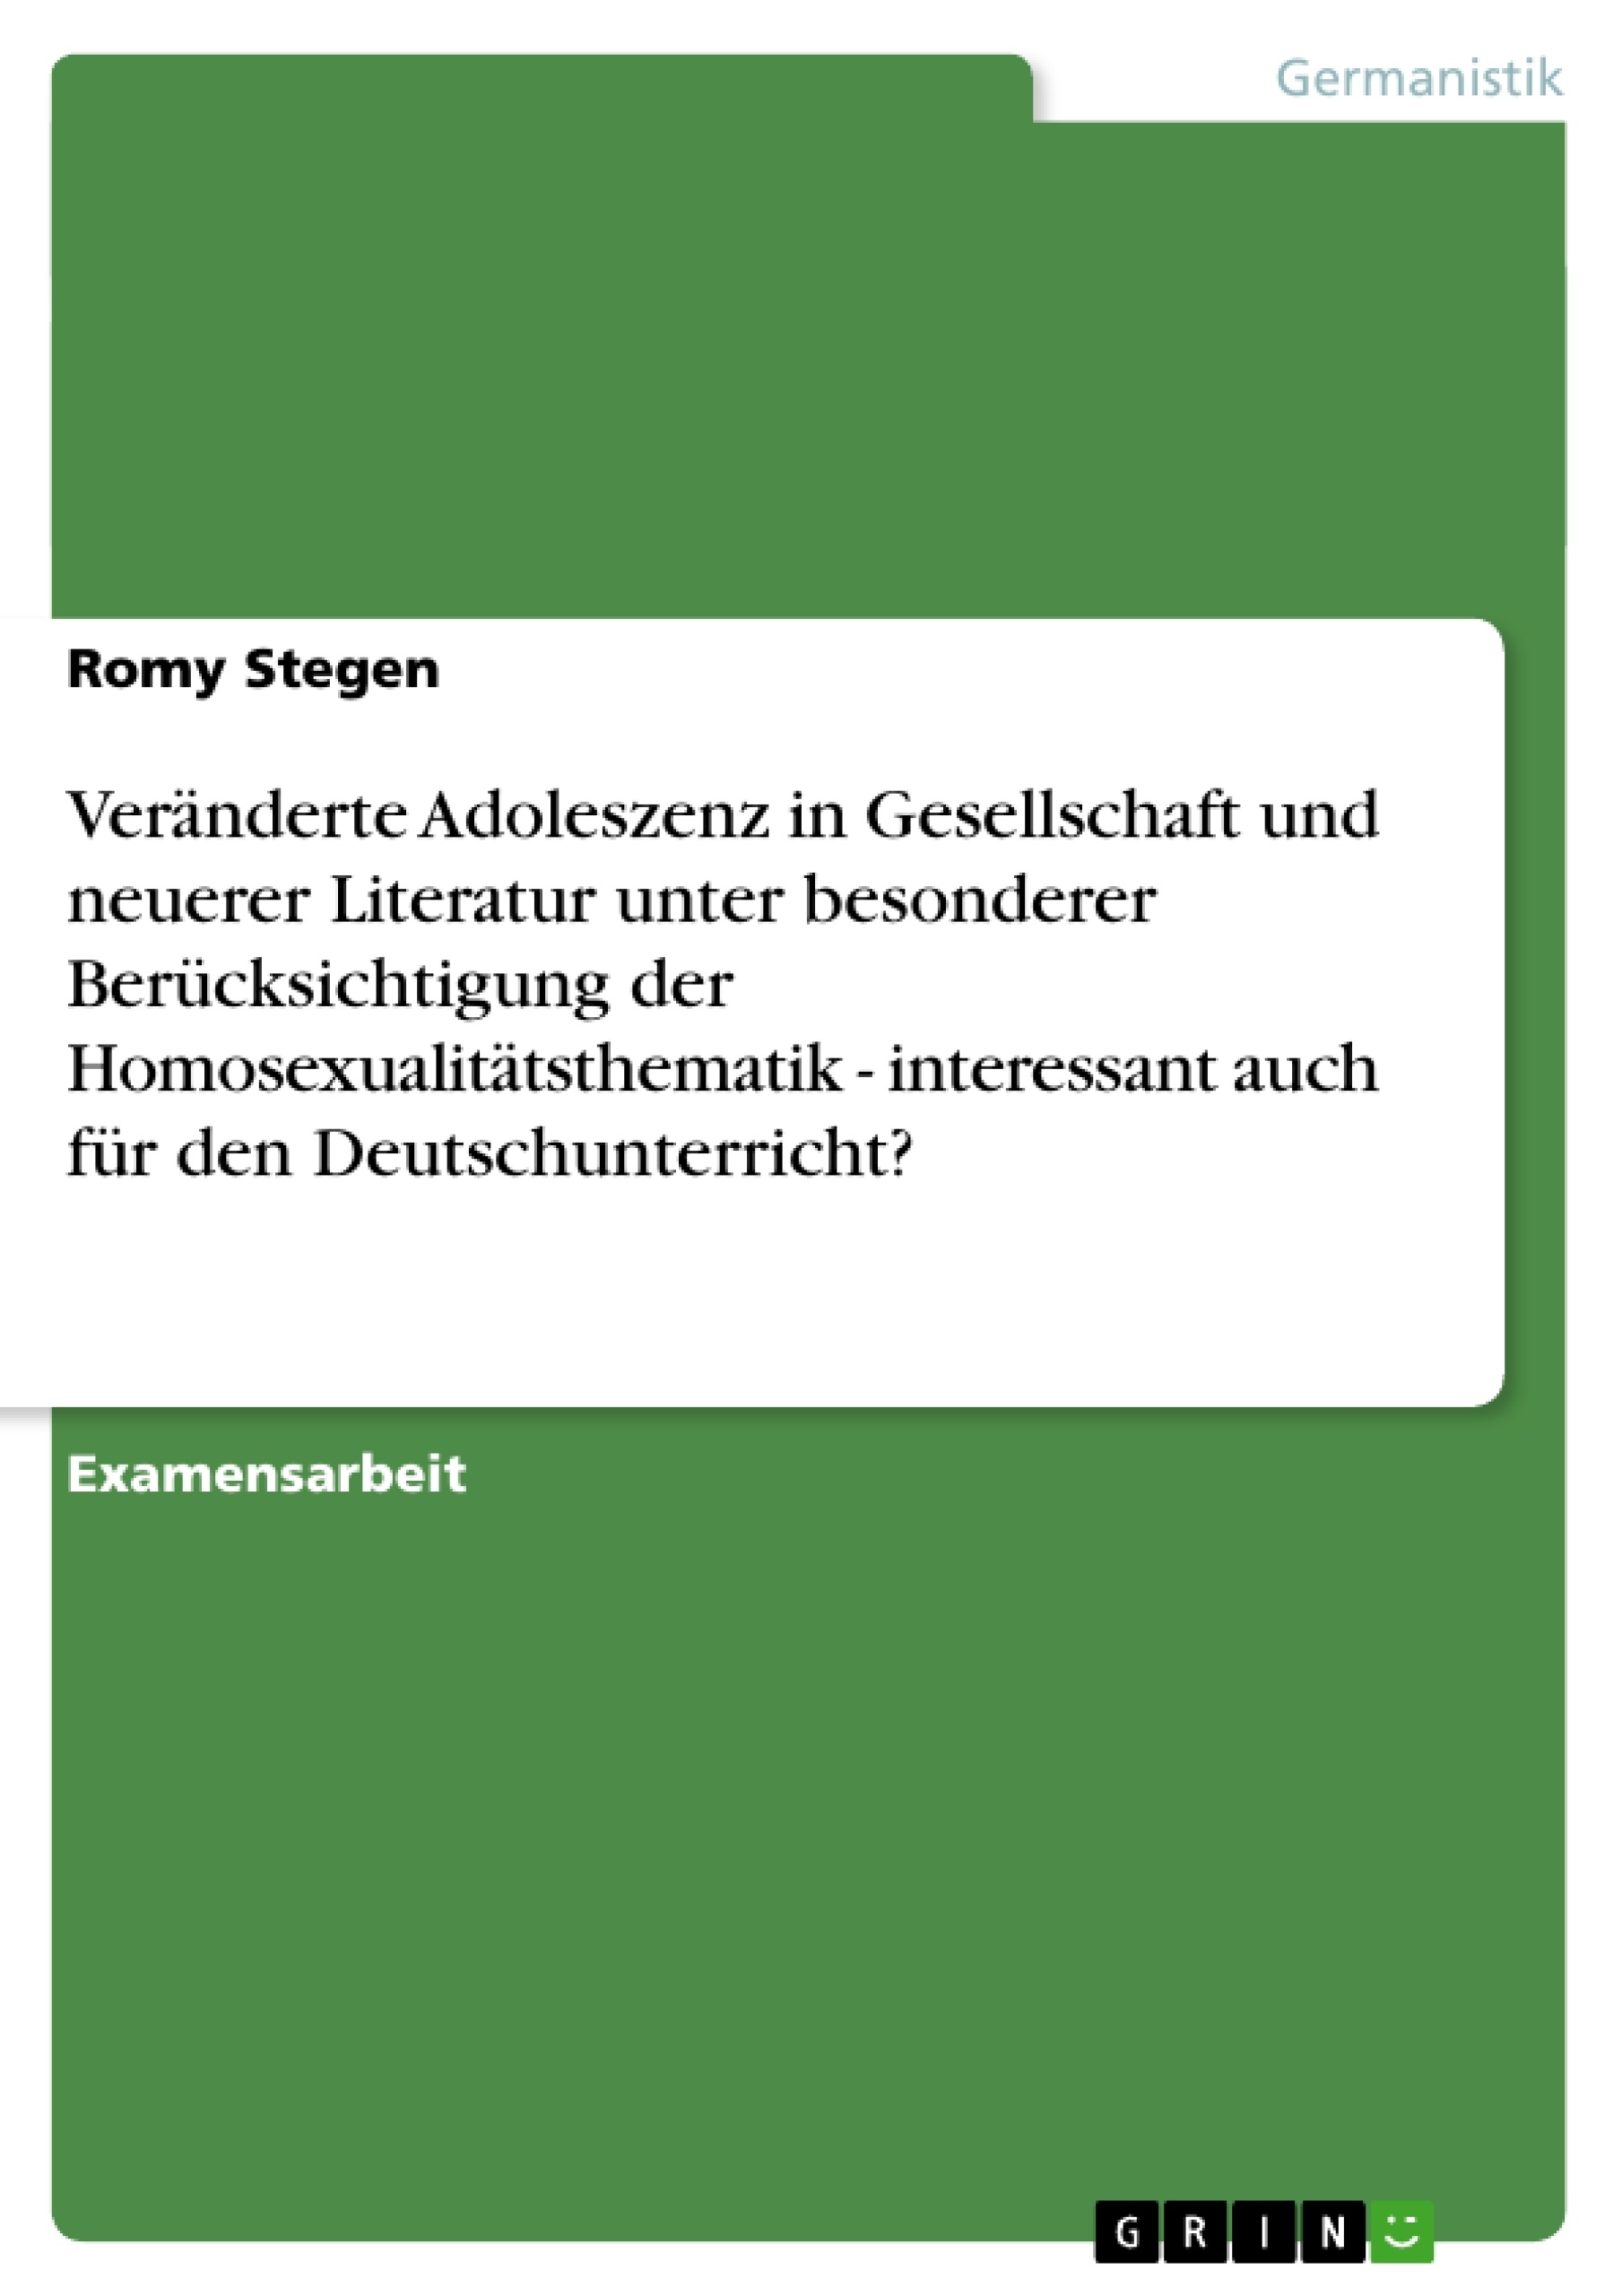 Titel: Veränderte Adoleszenz in Gesellschaft und neuerer Literatur unter besonderer Berücksichtigung der Homosexualitätsthematik - interessant auch für den Deutschunterricht?